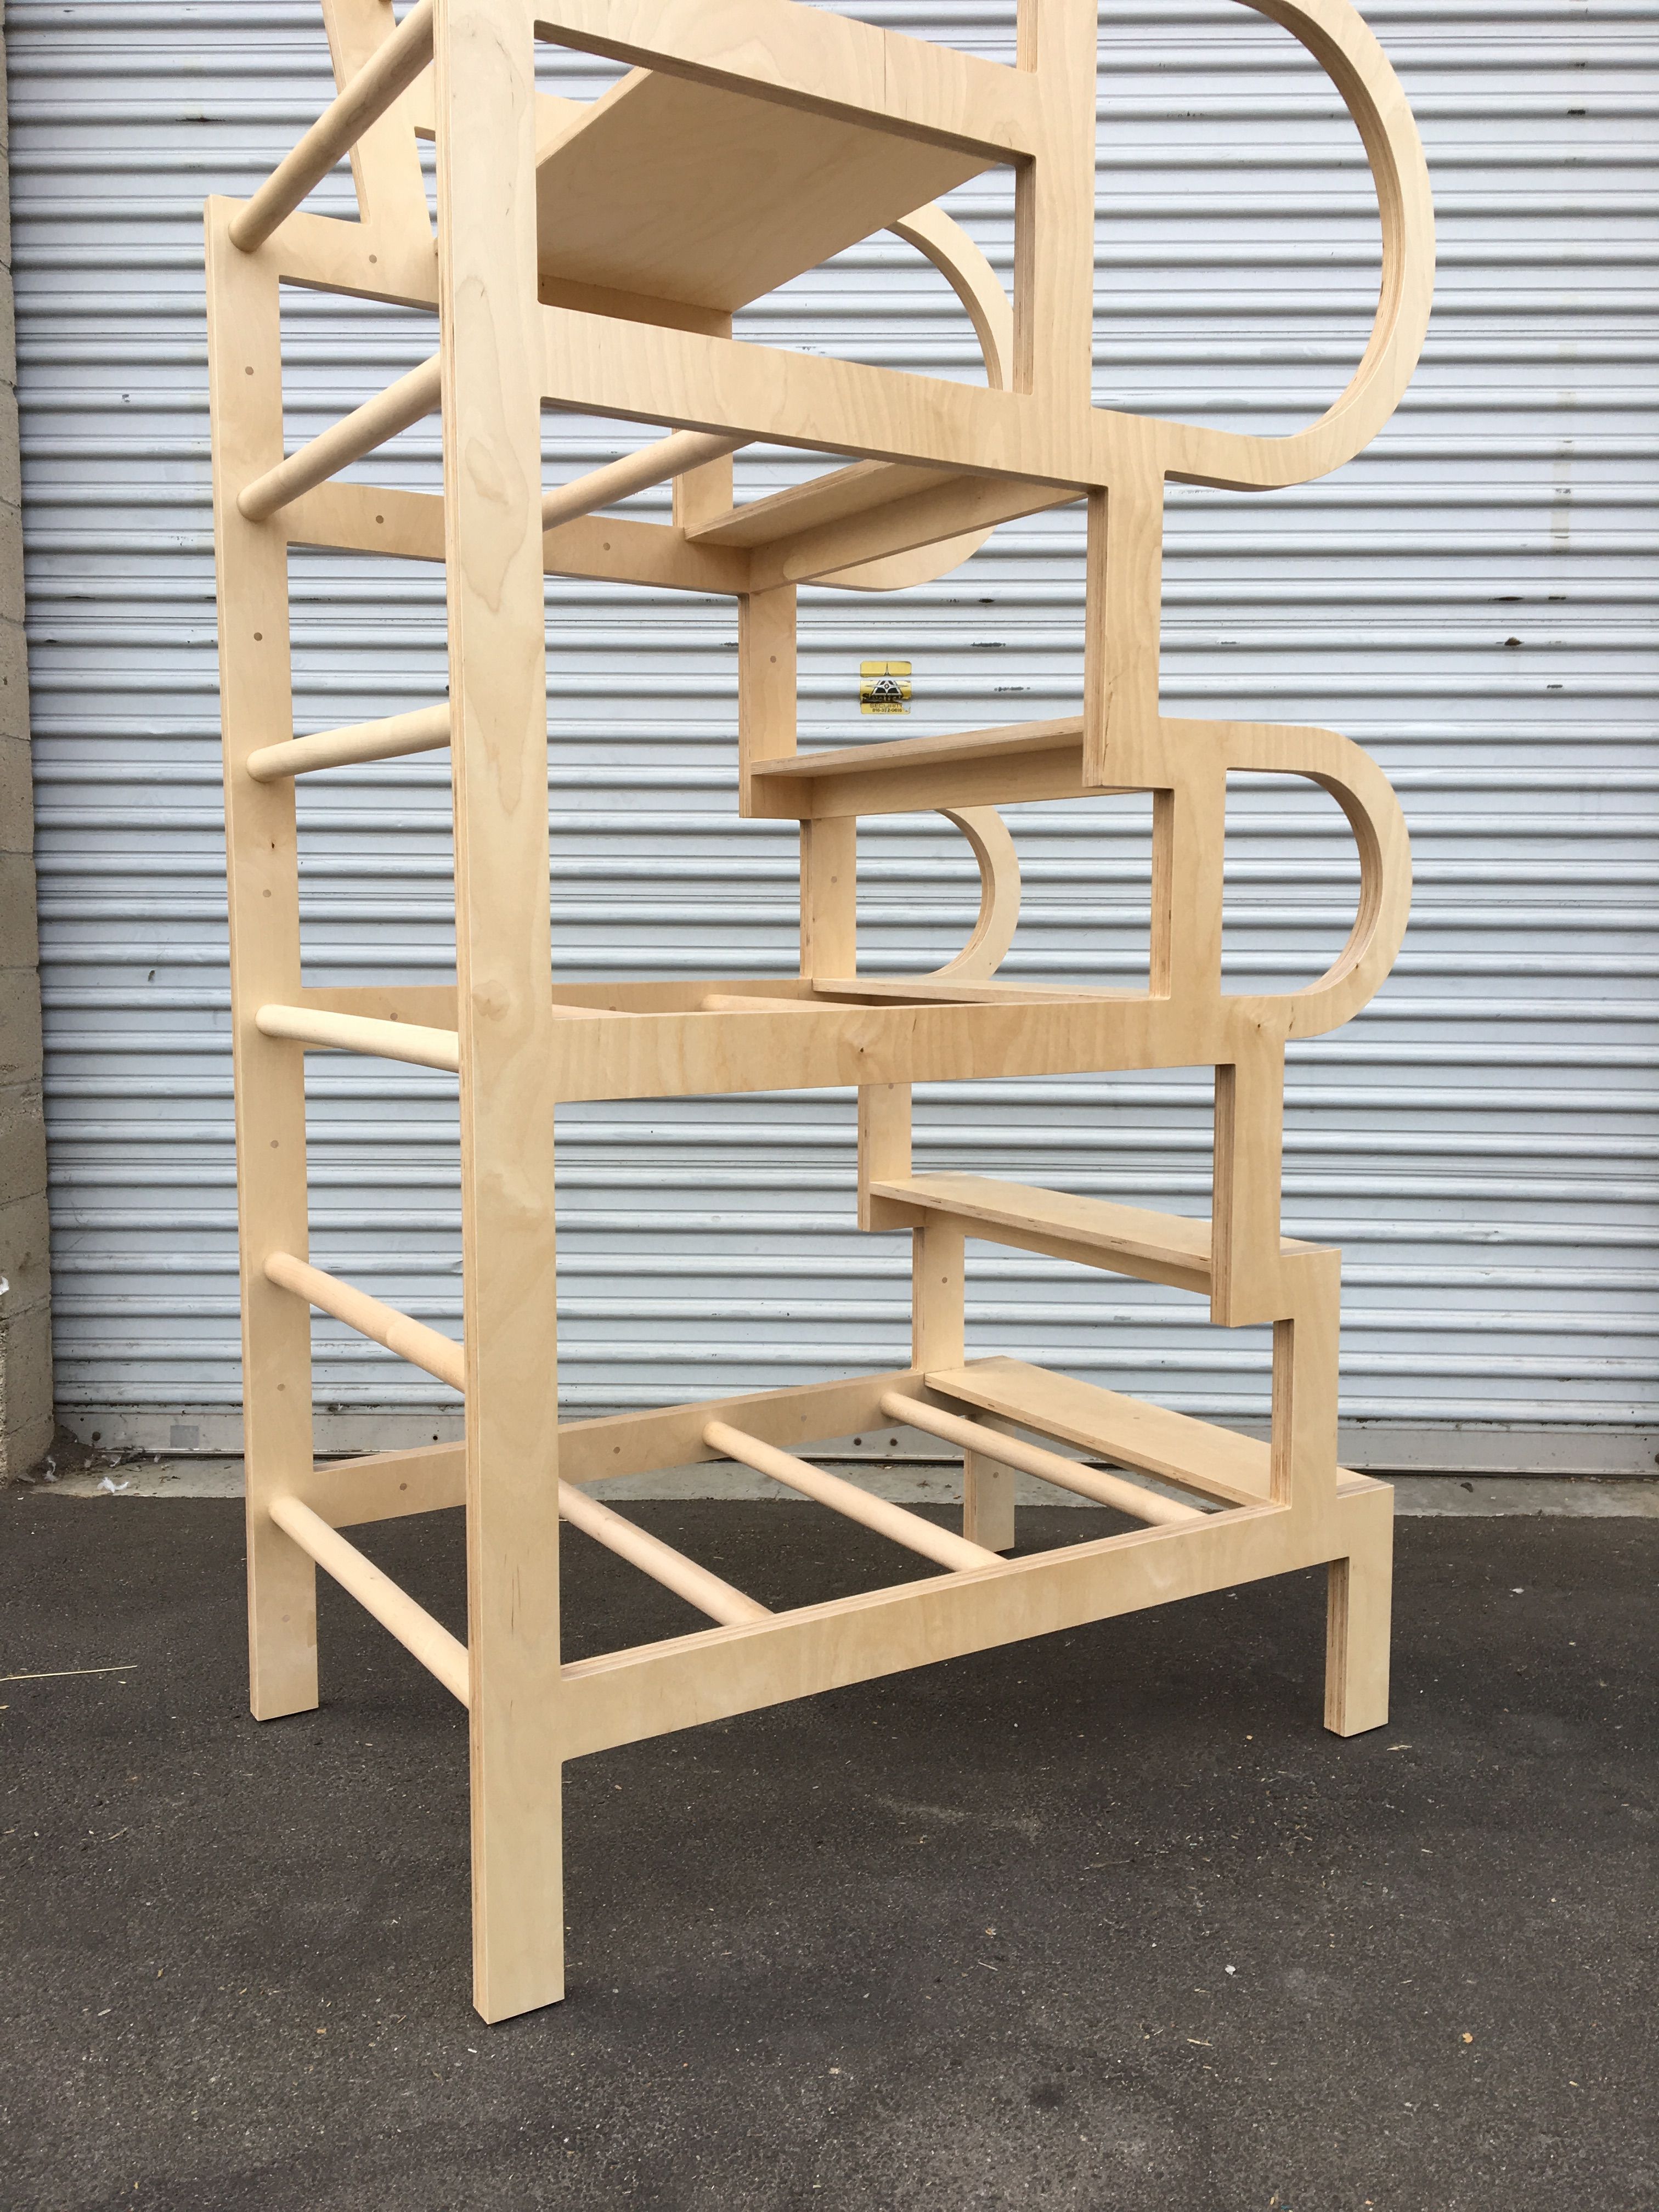  Climbable Chair - Owl Bureau x Adidas / Abbott Kinney Festival product image 13